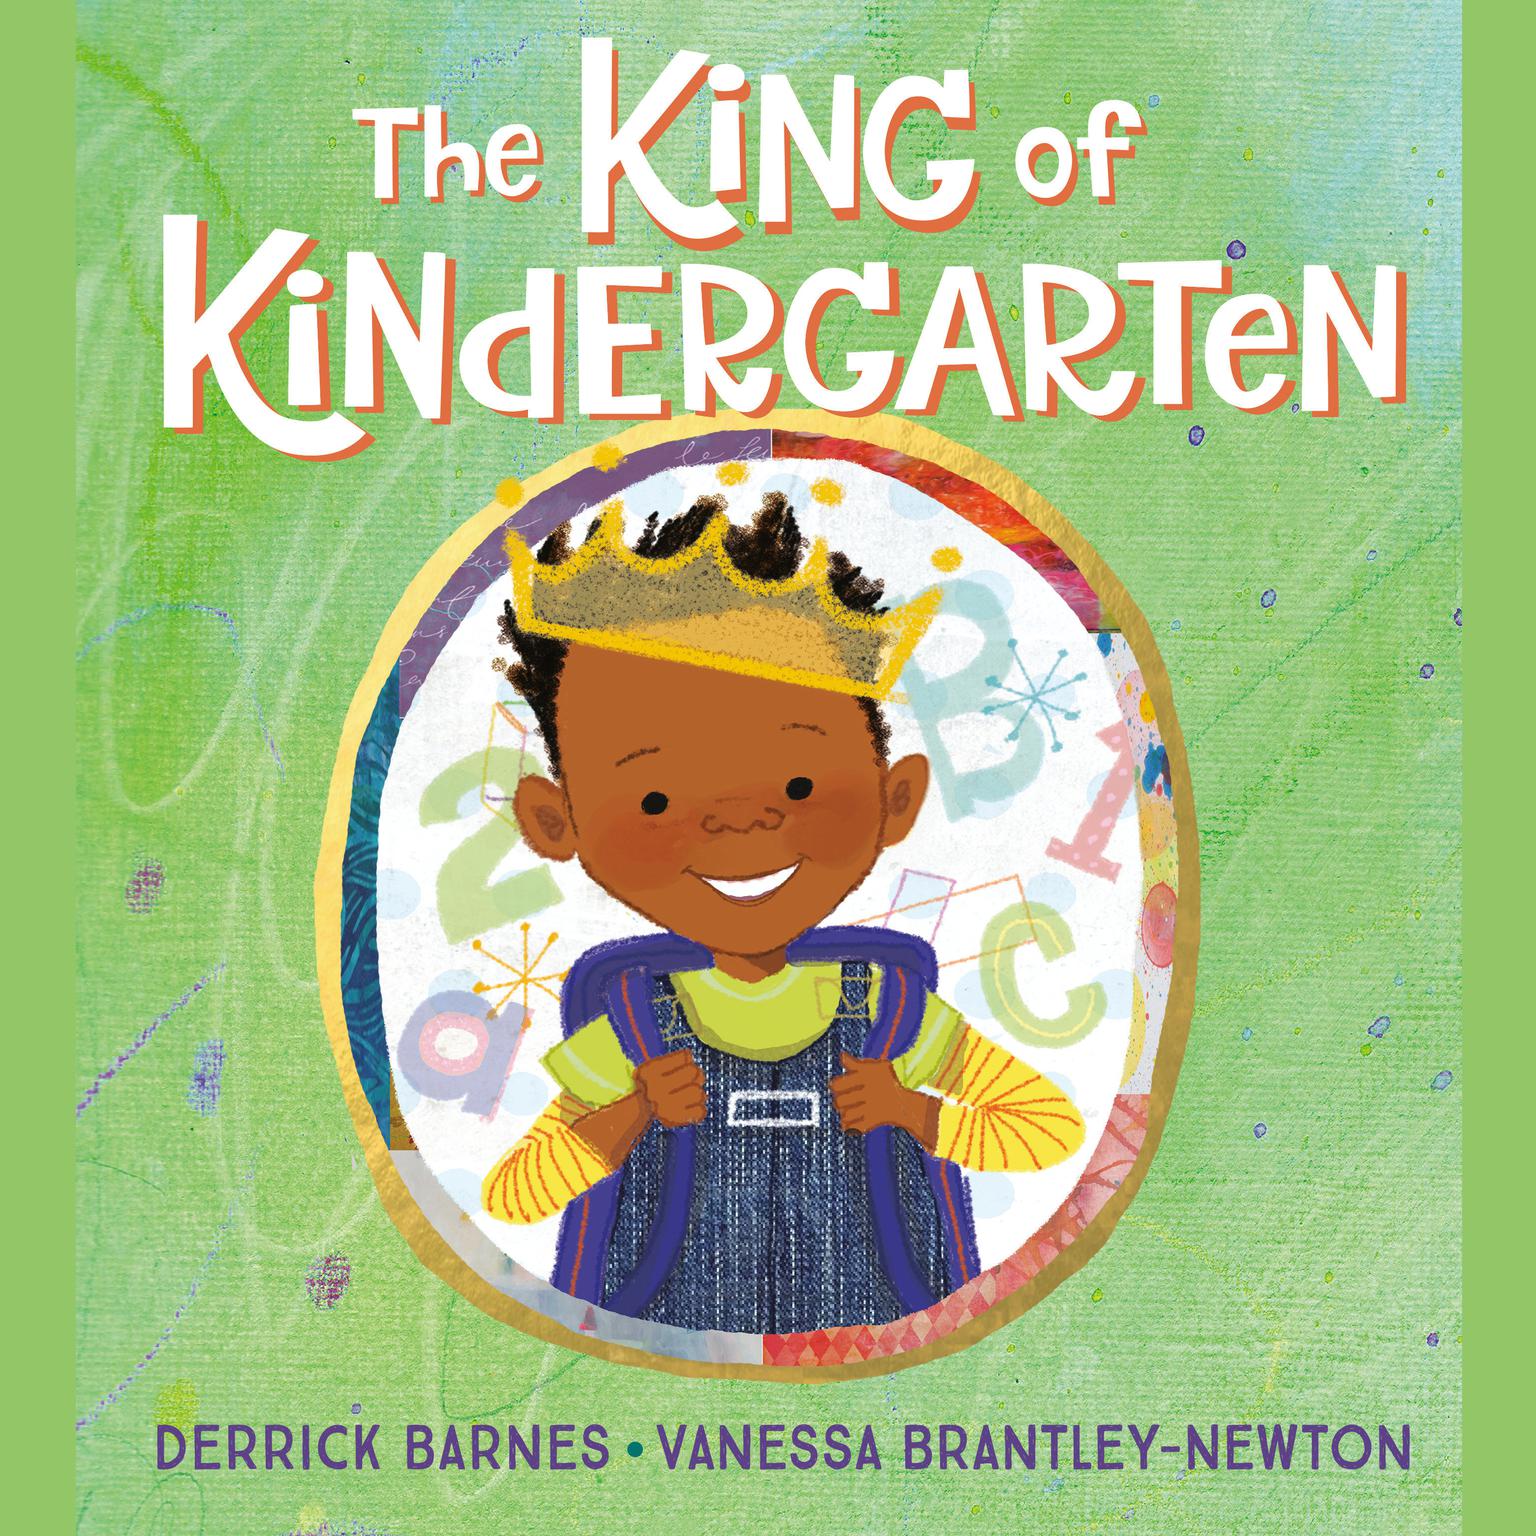 The King of Kindergarten Audiobook, by Derrick Barnes